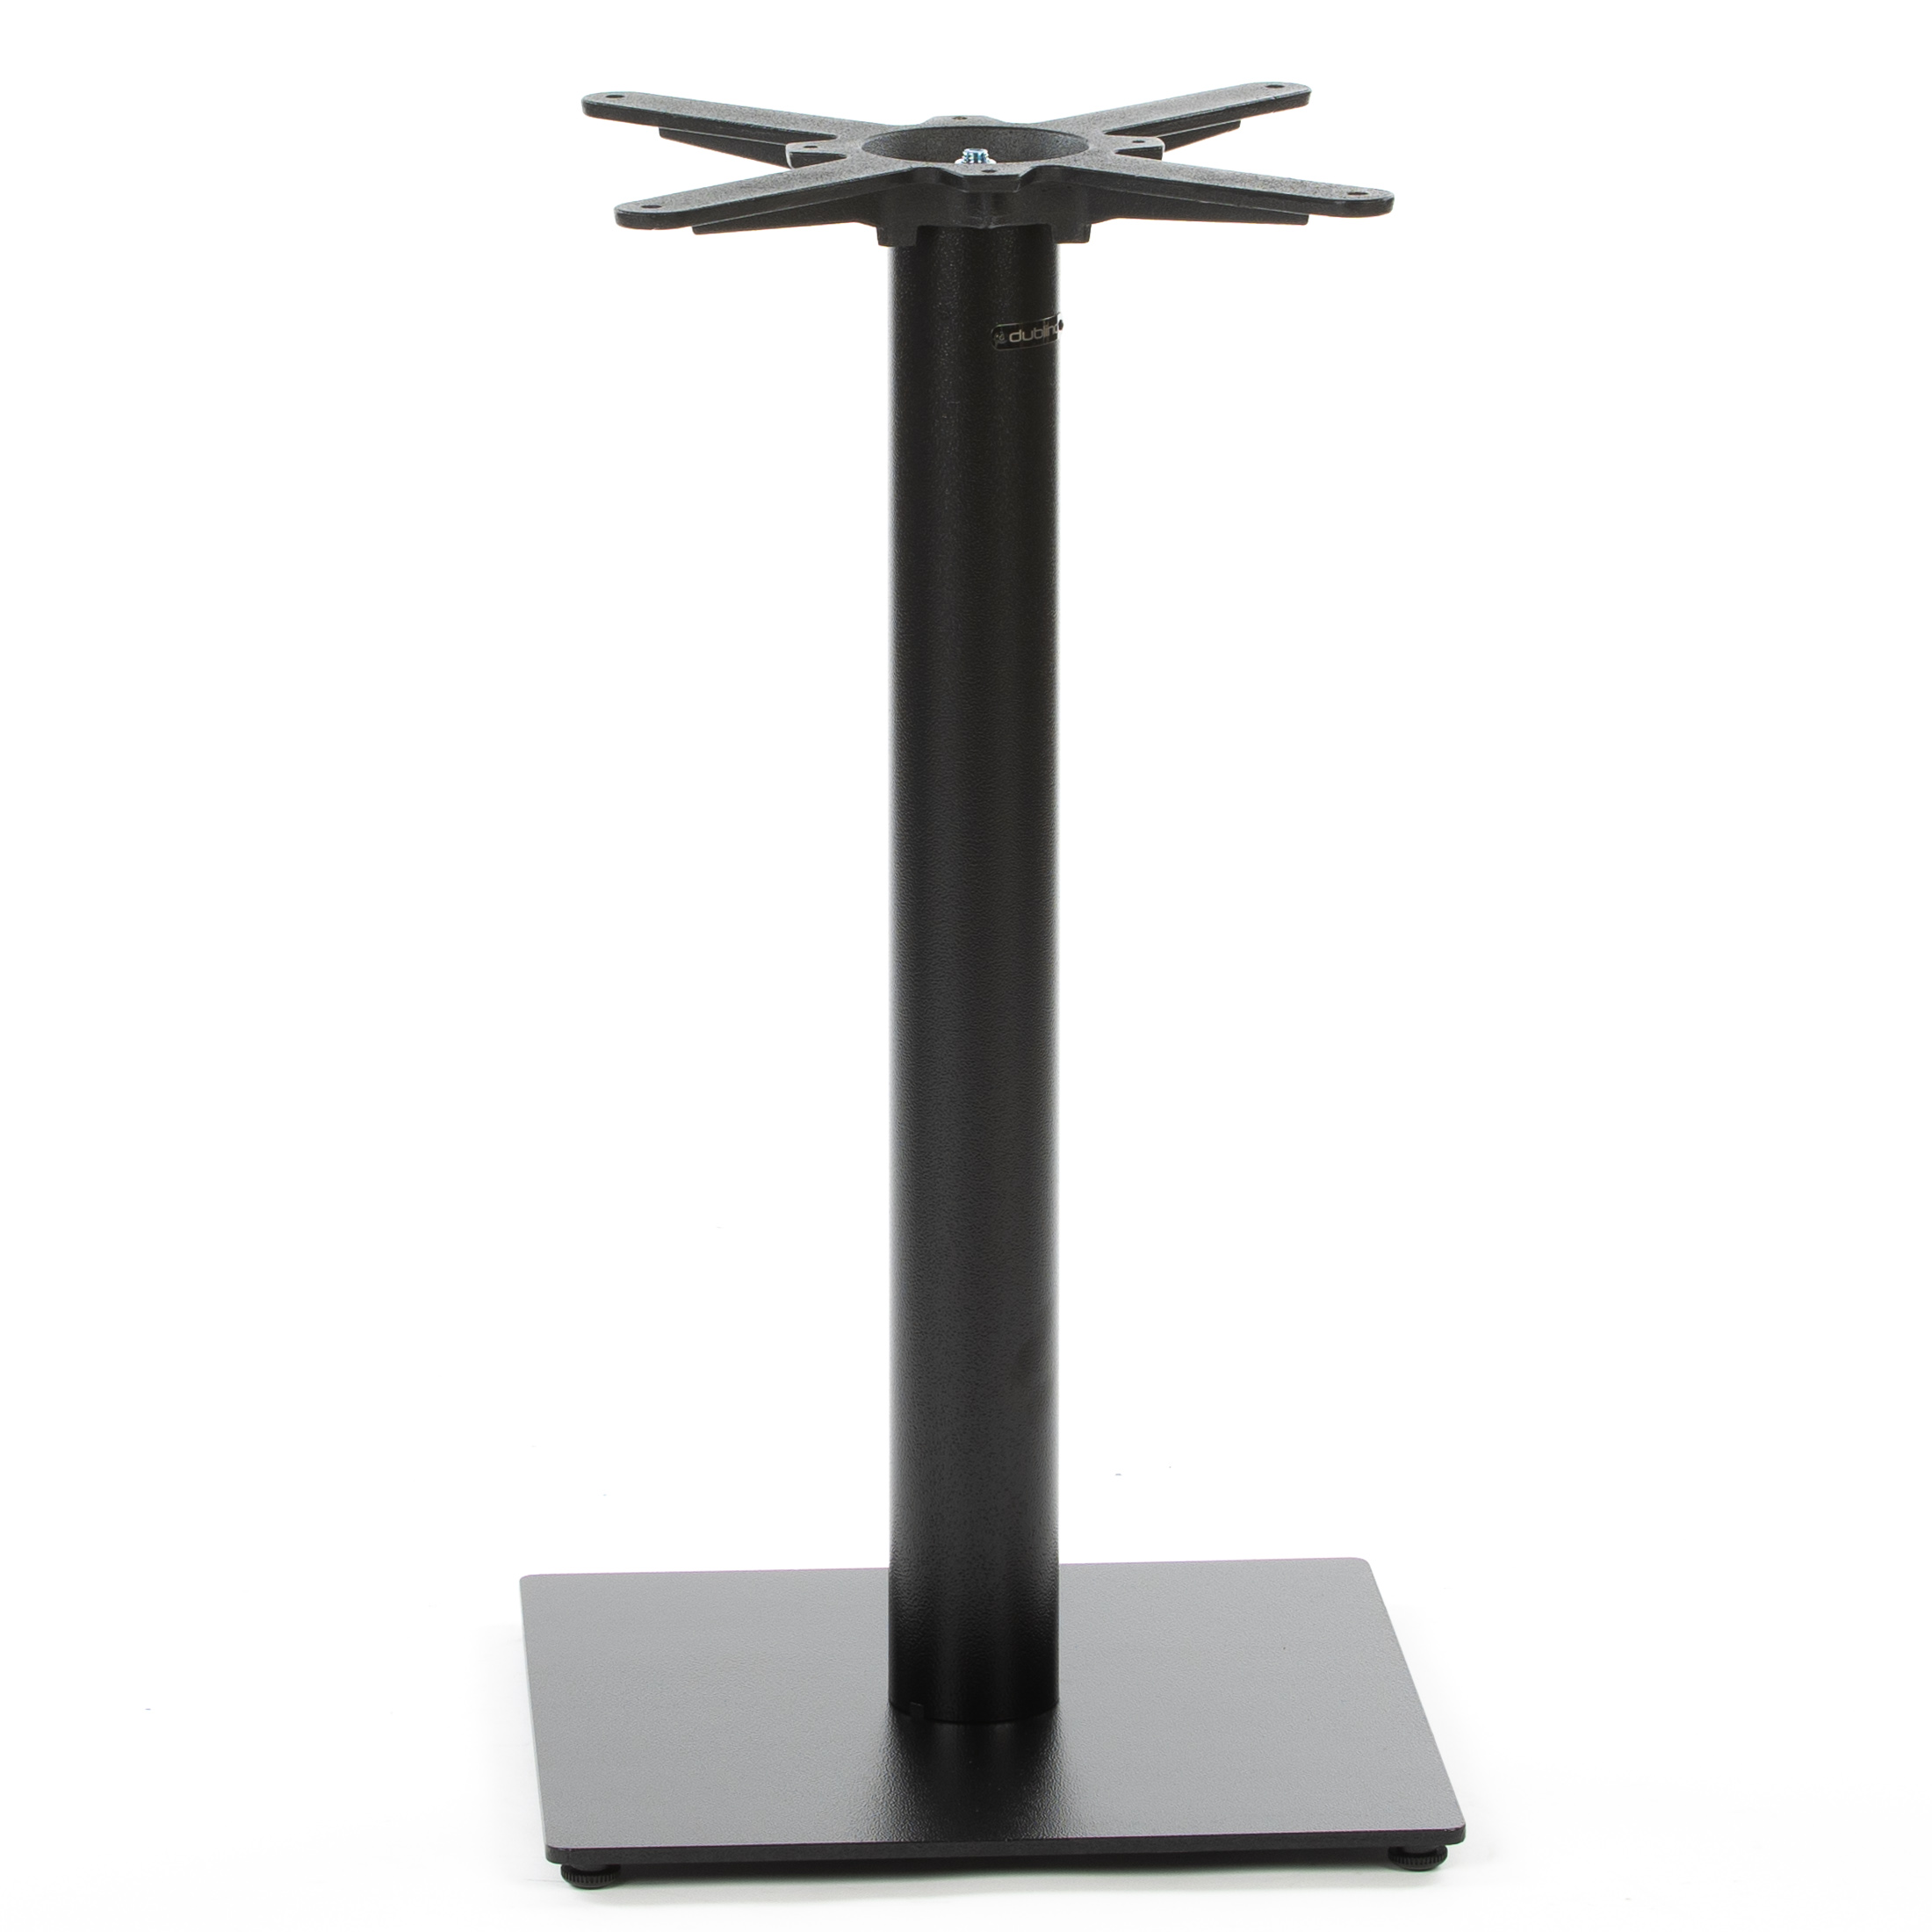 Tischgestell PJ6087 Premium - schwarz - pulverbeschichtet - Bodenplatte 40x40 cm - 16 kg